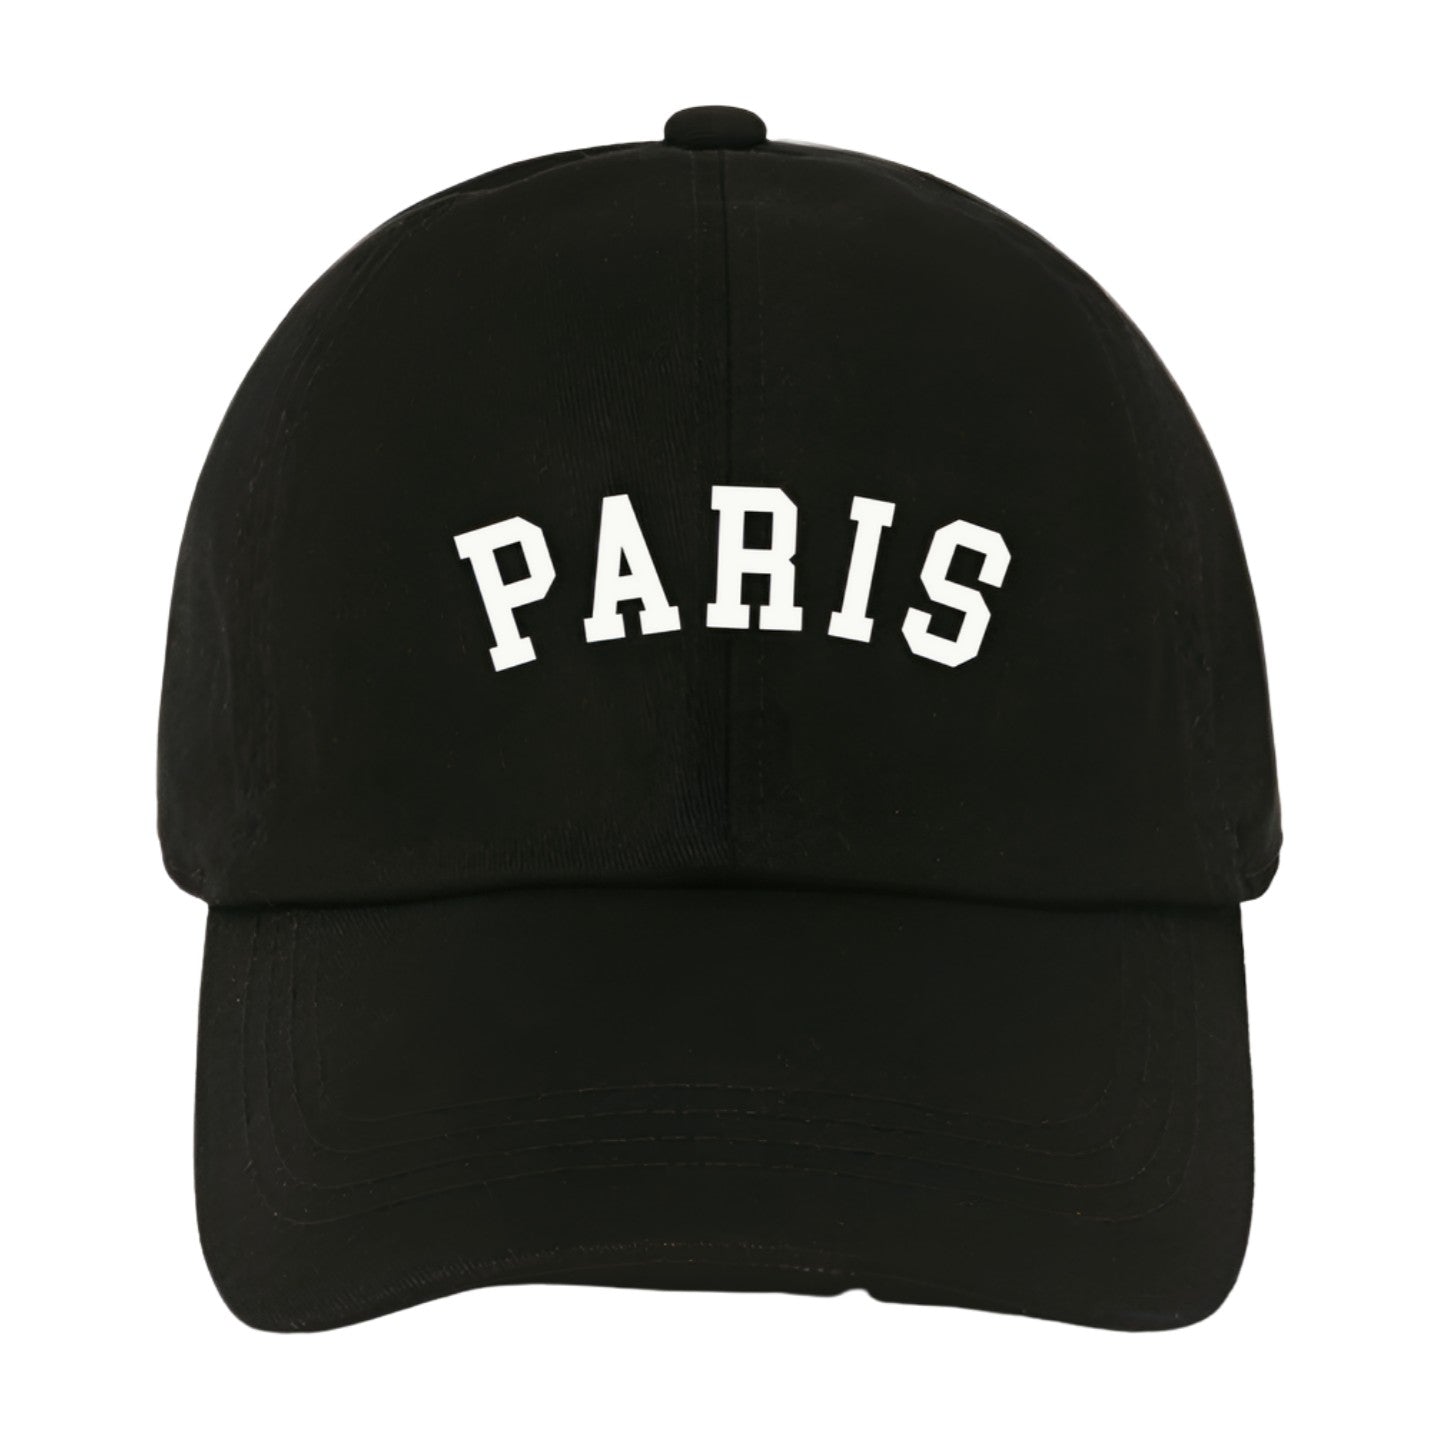 PARIS cotton hat